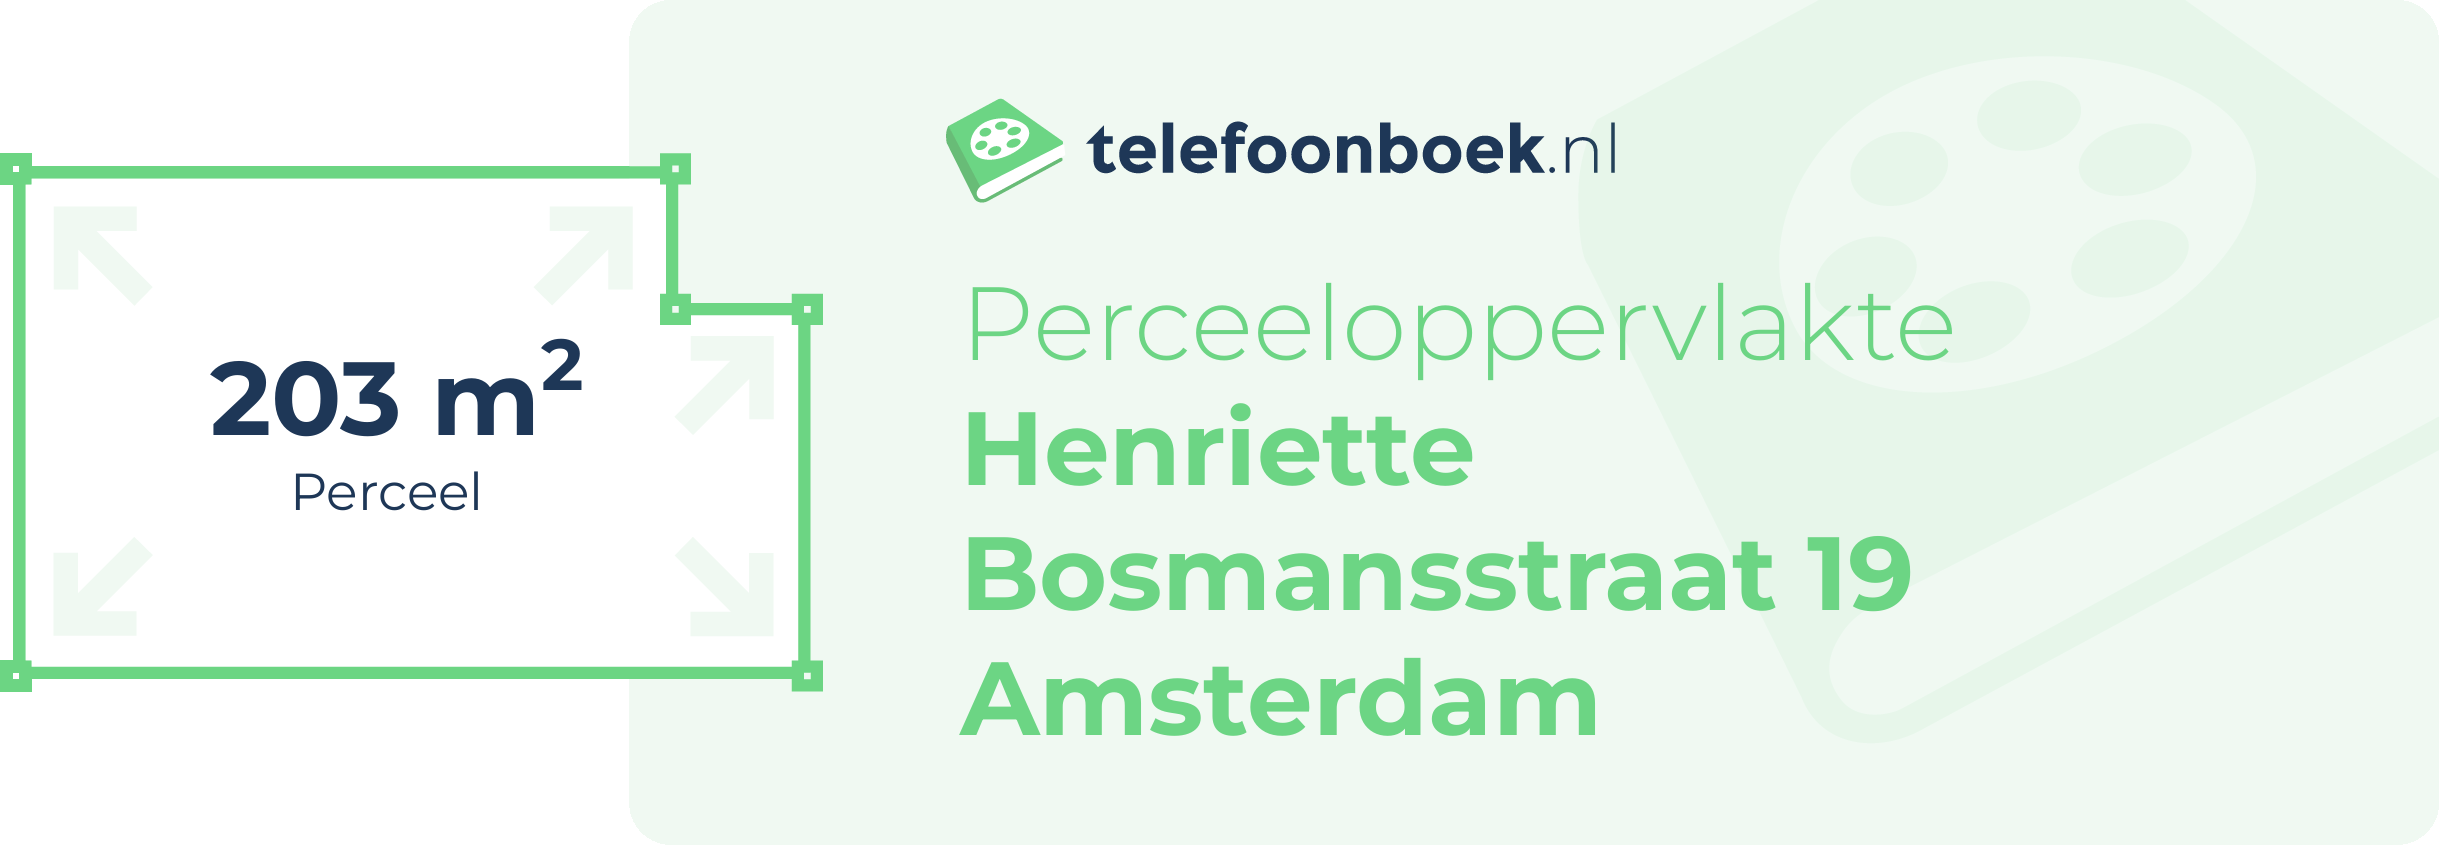 Perceeloppervlakte Henriette Bosmansstraat 19 Amsterdam